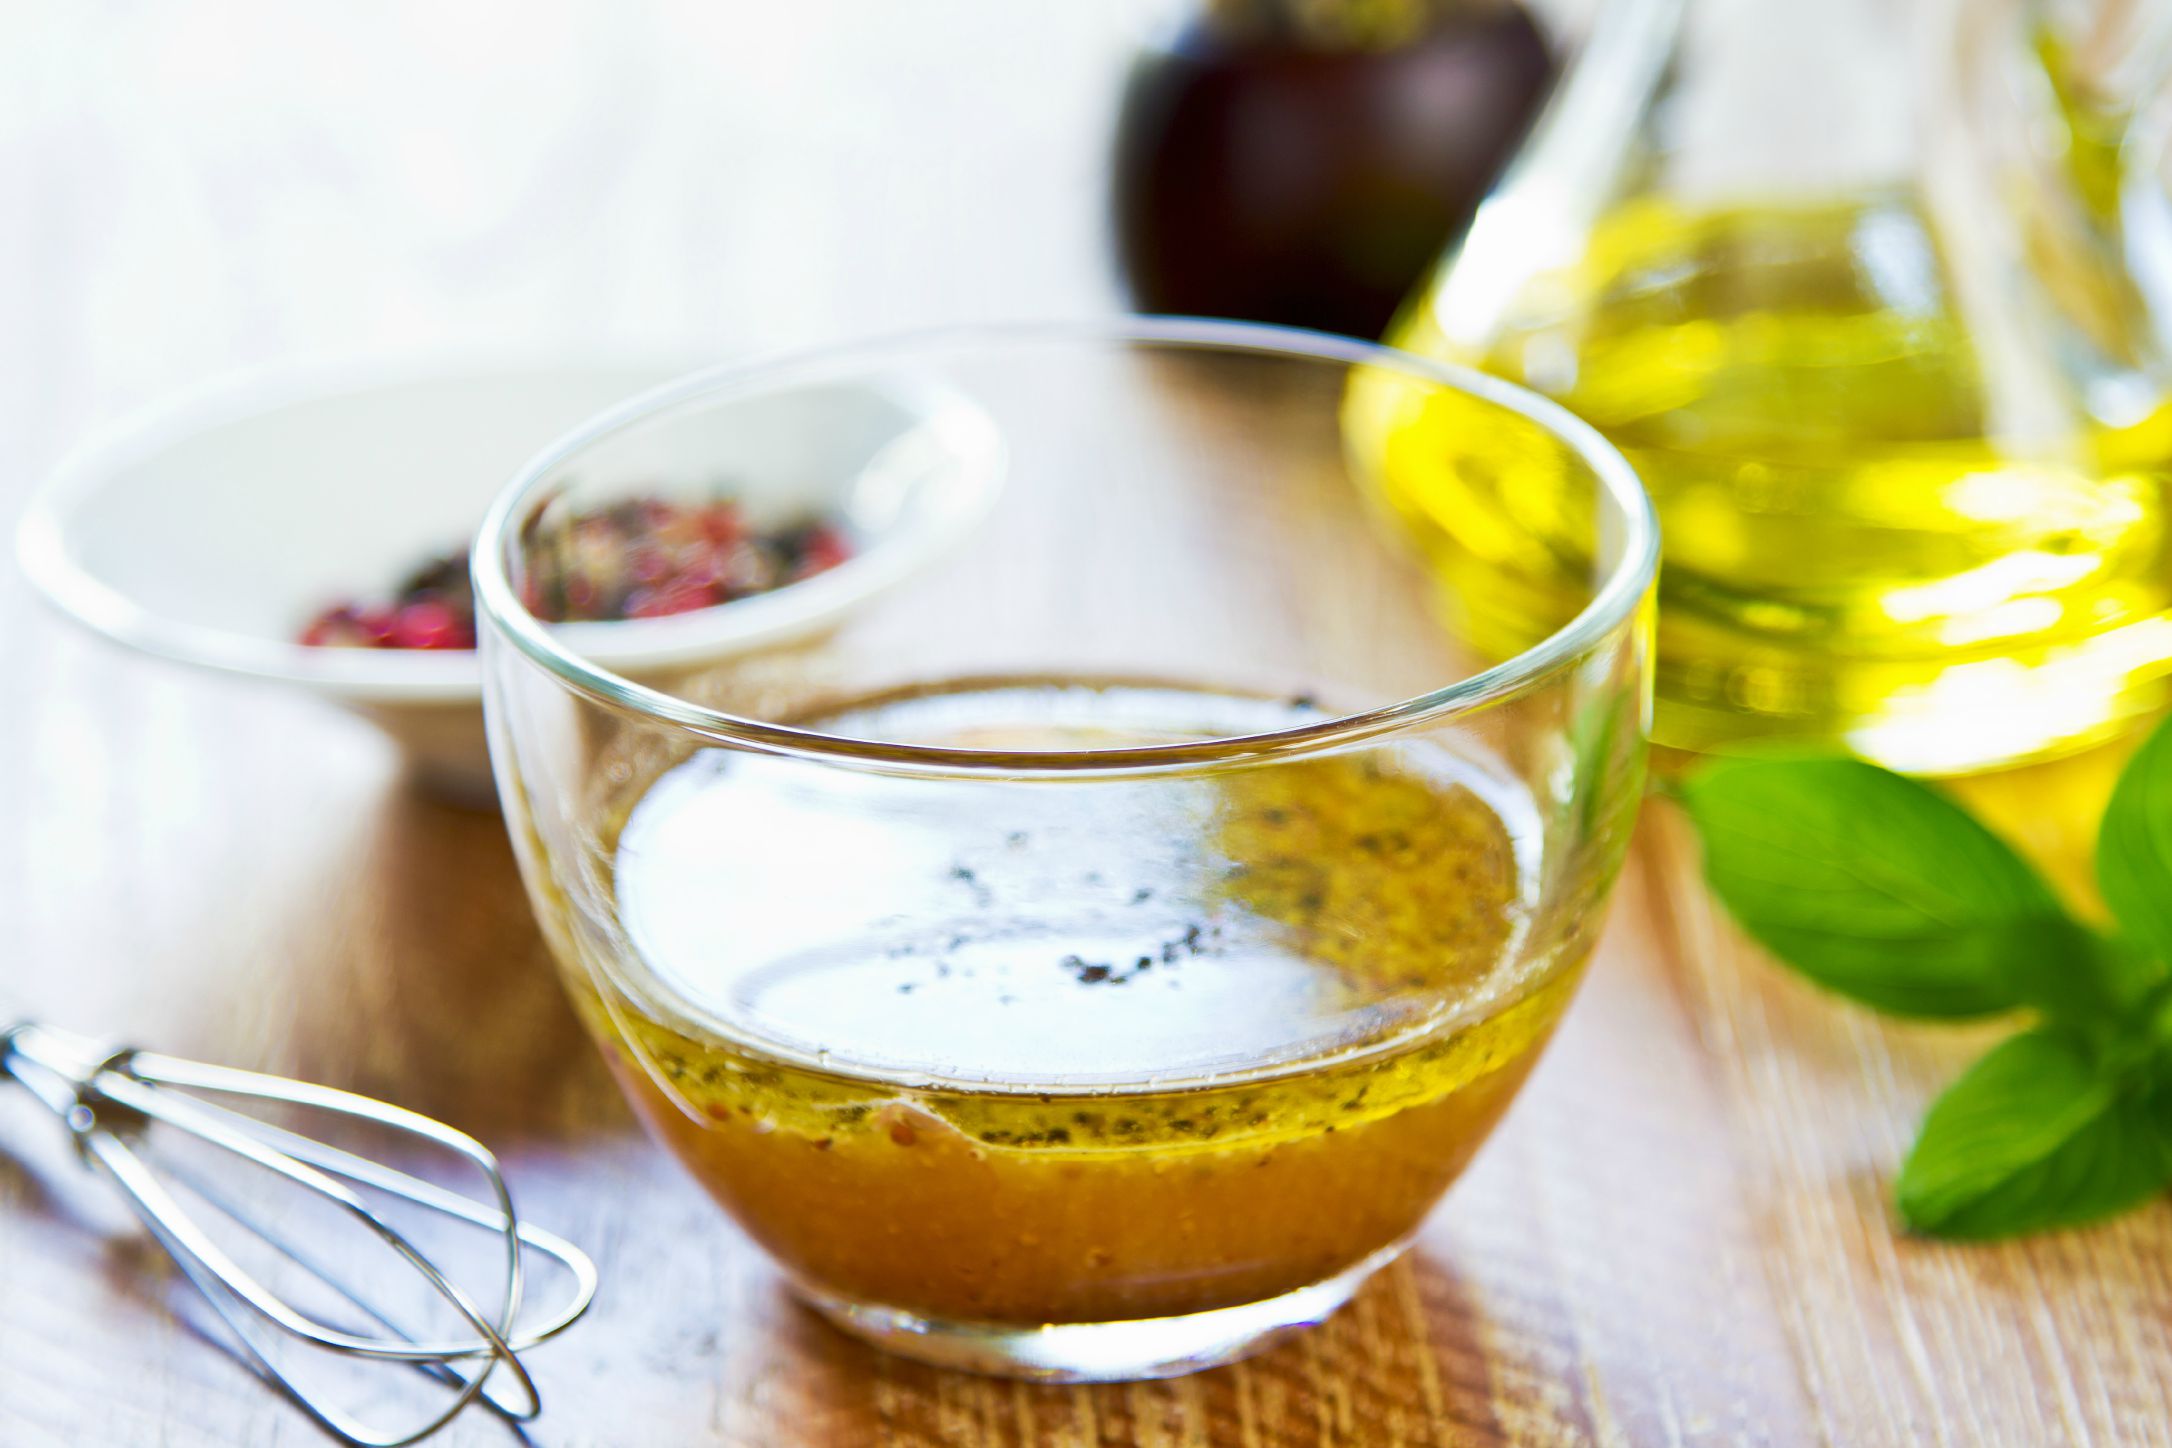 Заправка для салата горчица оливковое масло. Соус винегрет (Vinaigrette).. Соусы на растительном масле. Соус из оливкового масла. Соусы из растительного масла для салатов.